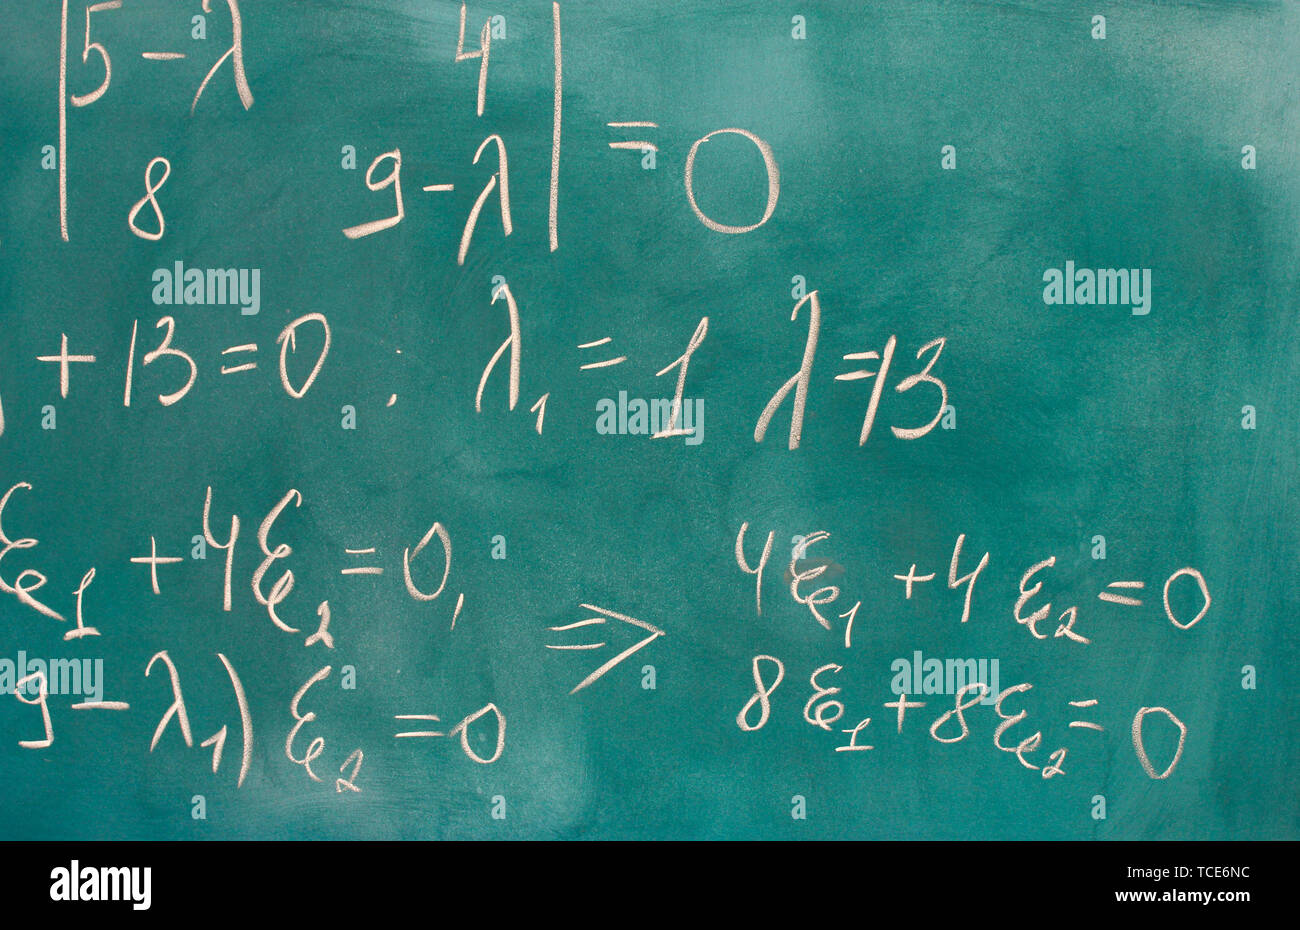 formulas written on green chalkboard Stock Photo